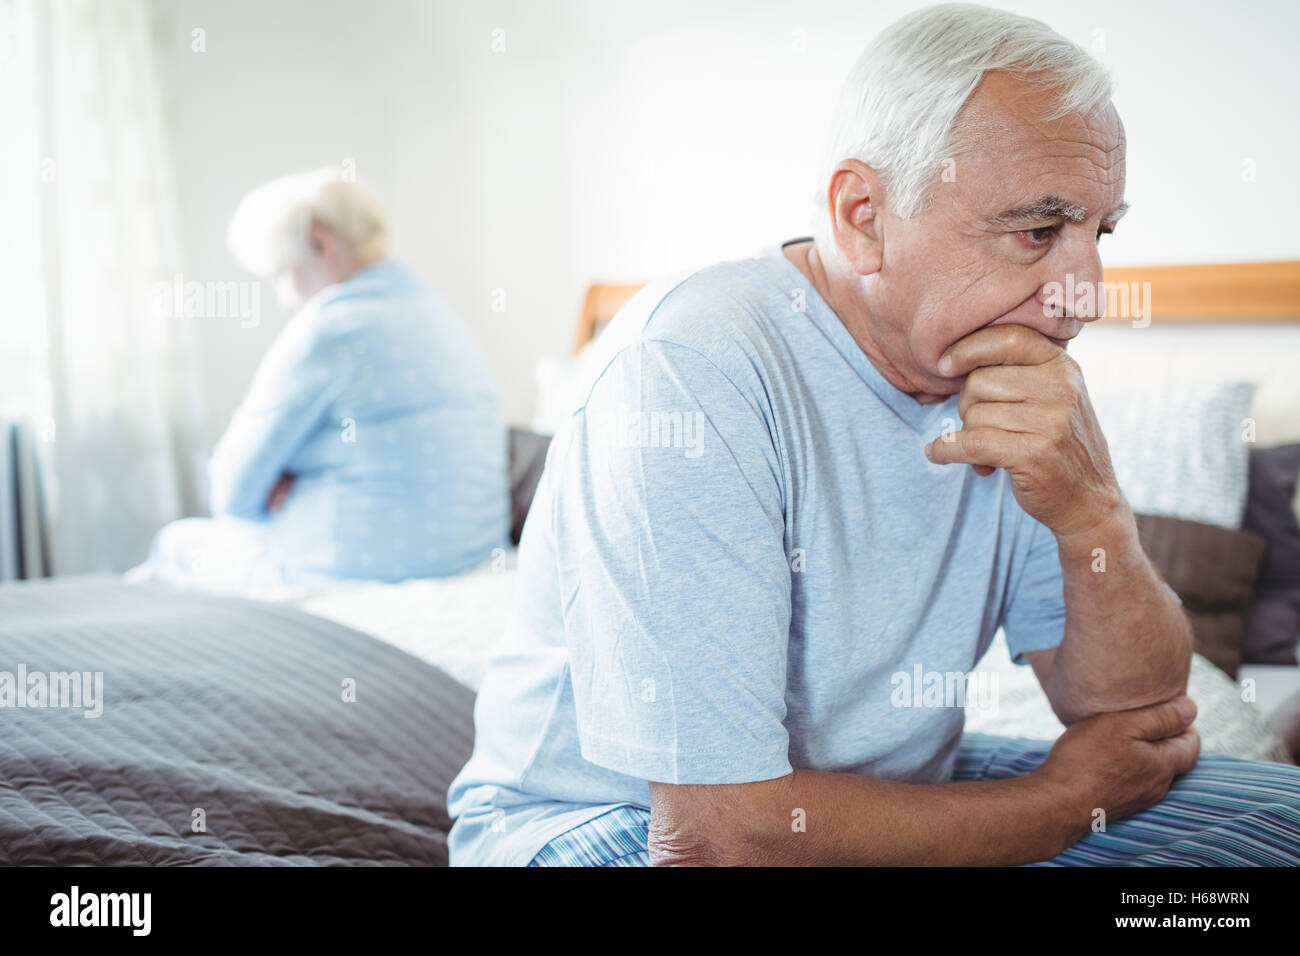 Sad senior couple sitting on bed Stock Photo